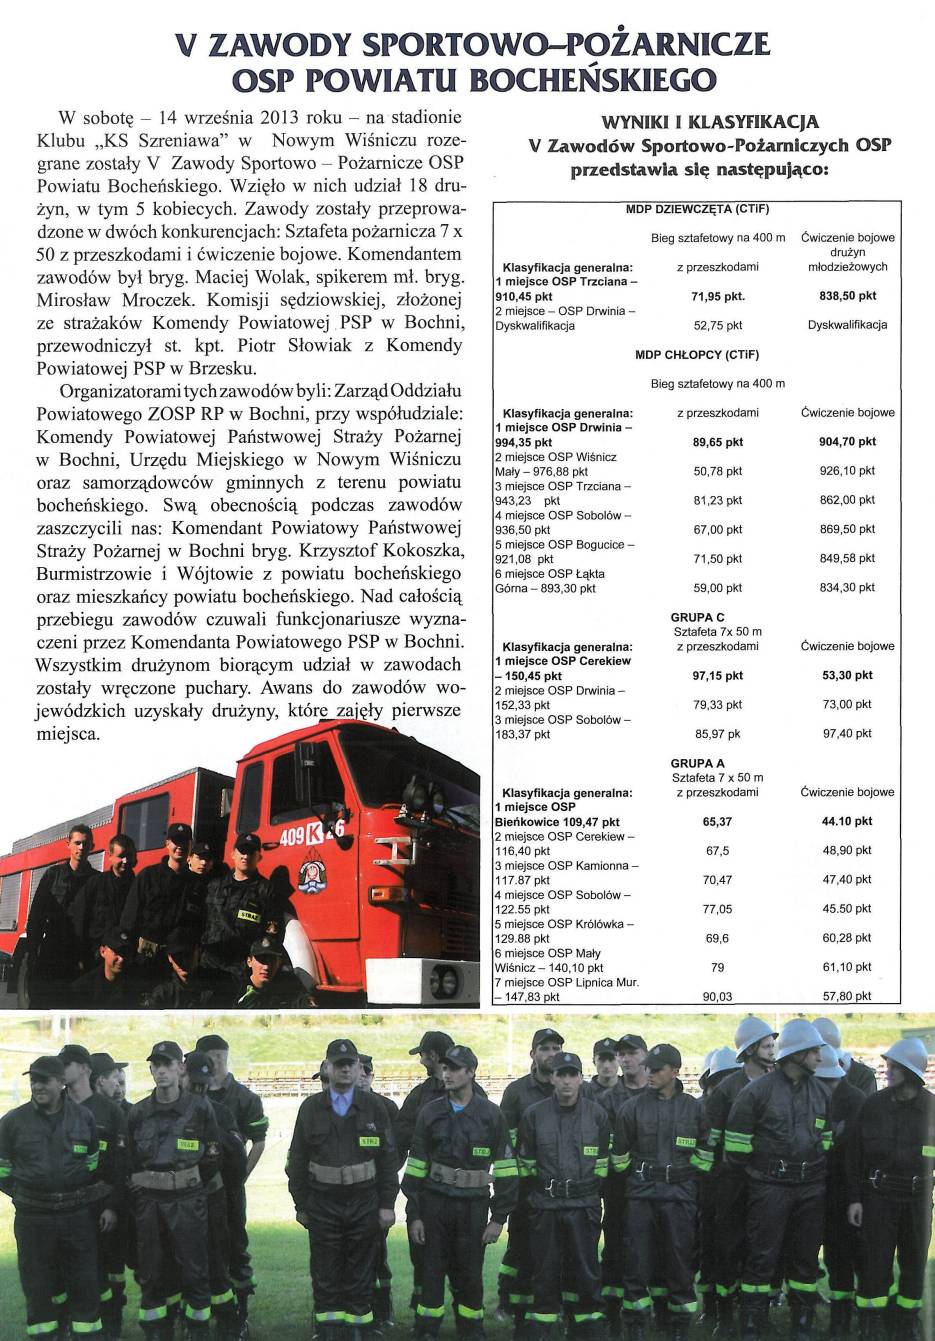 Wiadomości Wiśnickie  - 10-11.2013